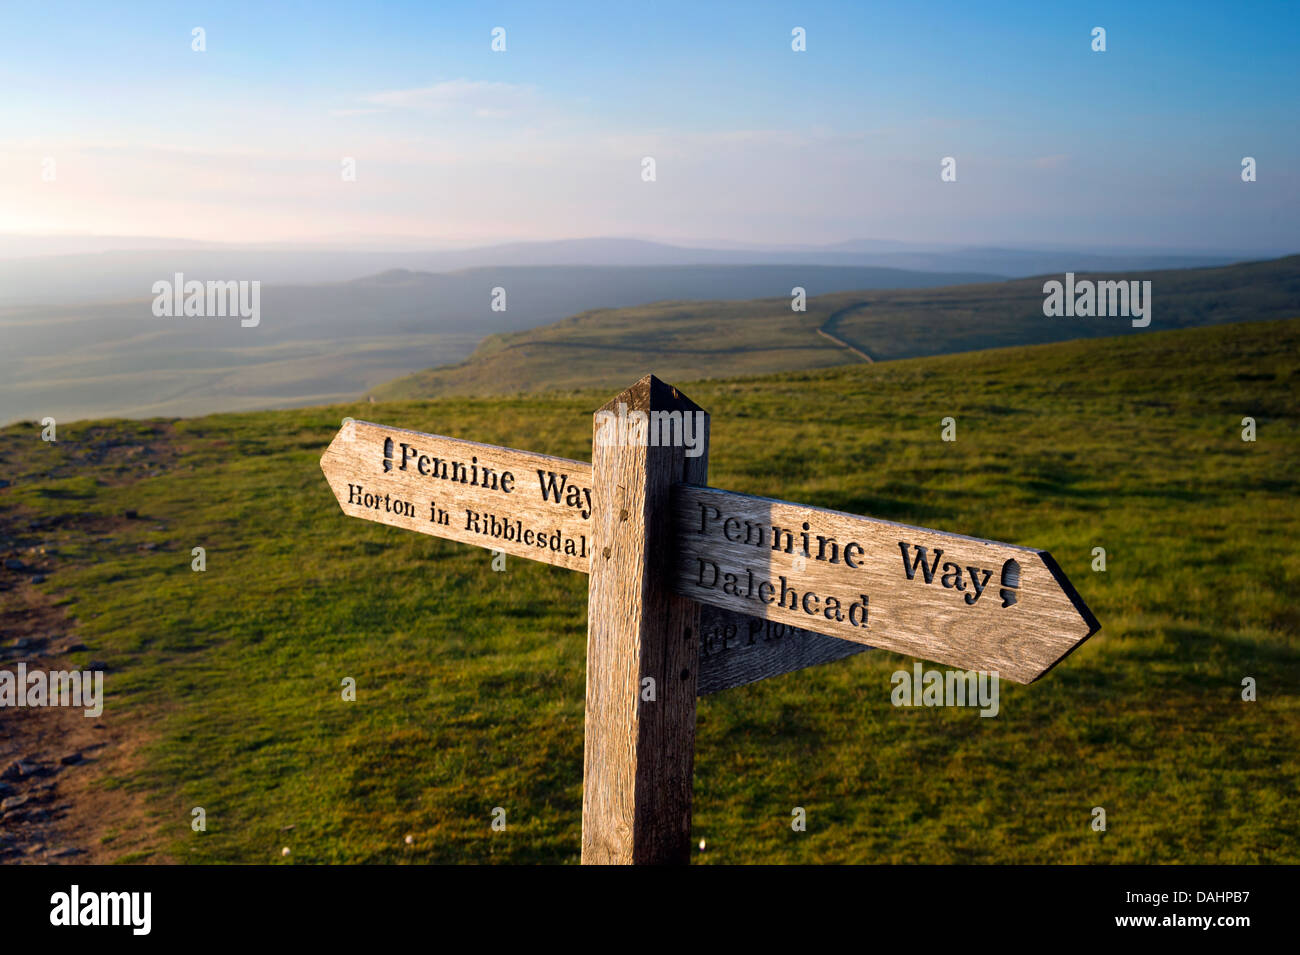 Der Pennine Way National Trail auf dem Gipfel des Pen-y-Gent, in der Nähe von Horton-in-Ribblesdale, Yorkshire Dales, Großbritannien Stockfoto